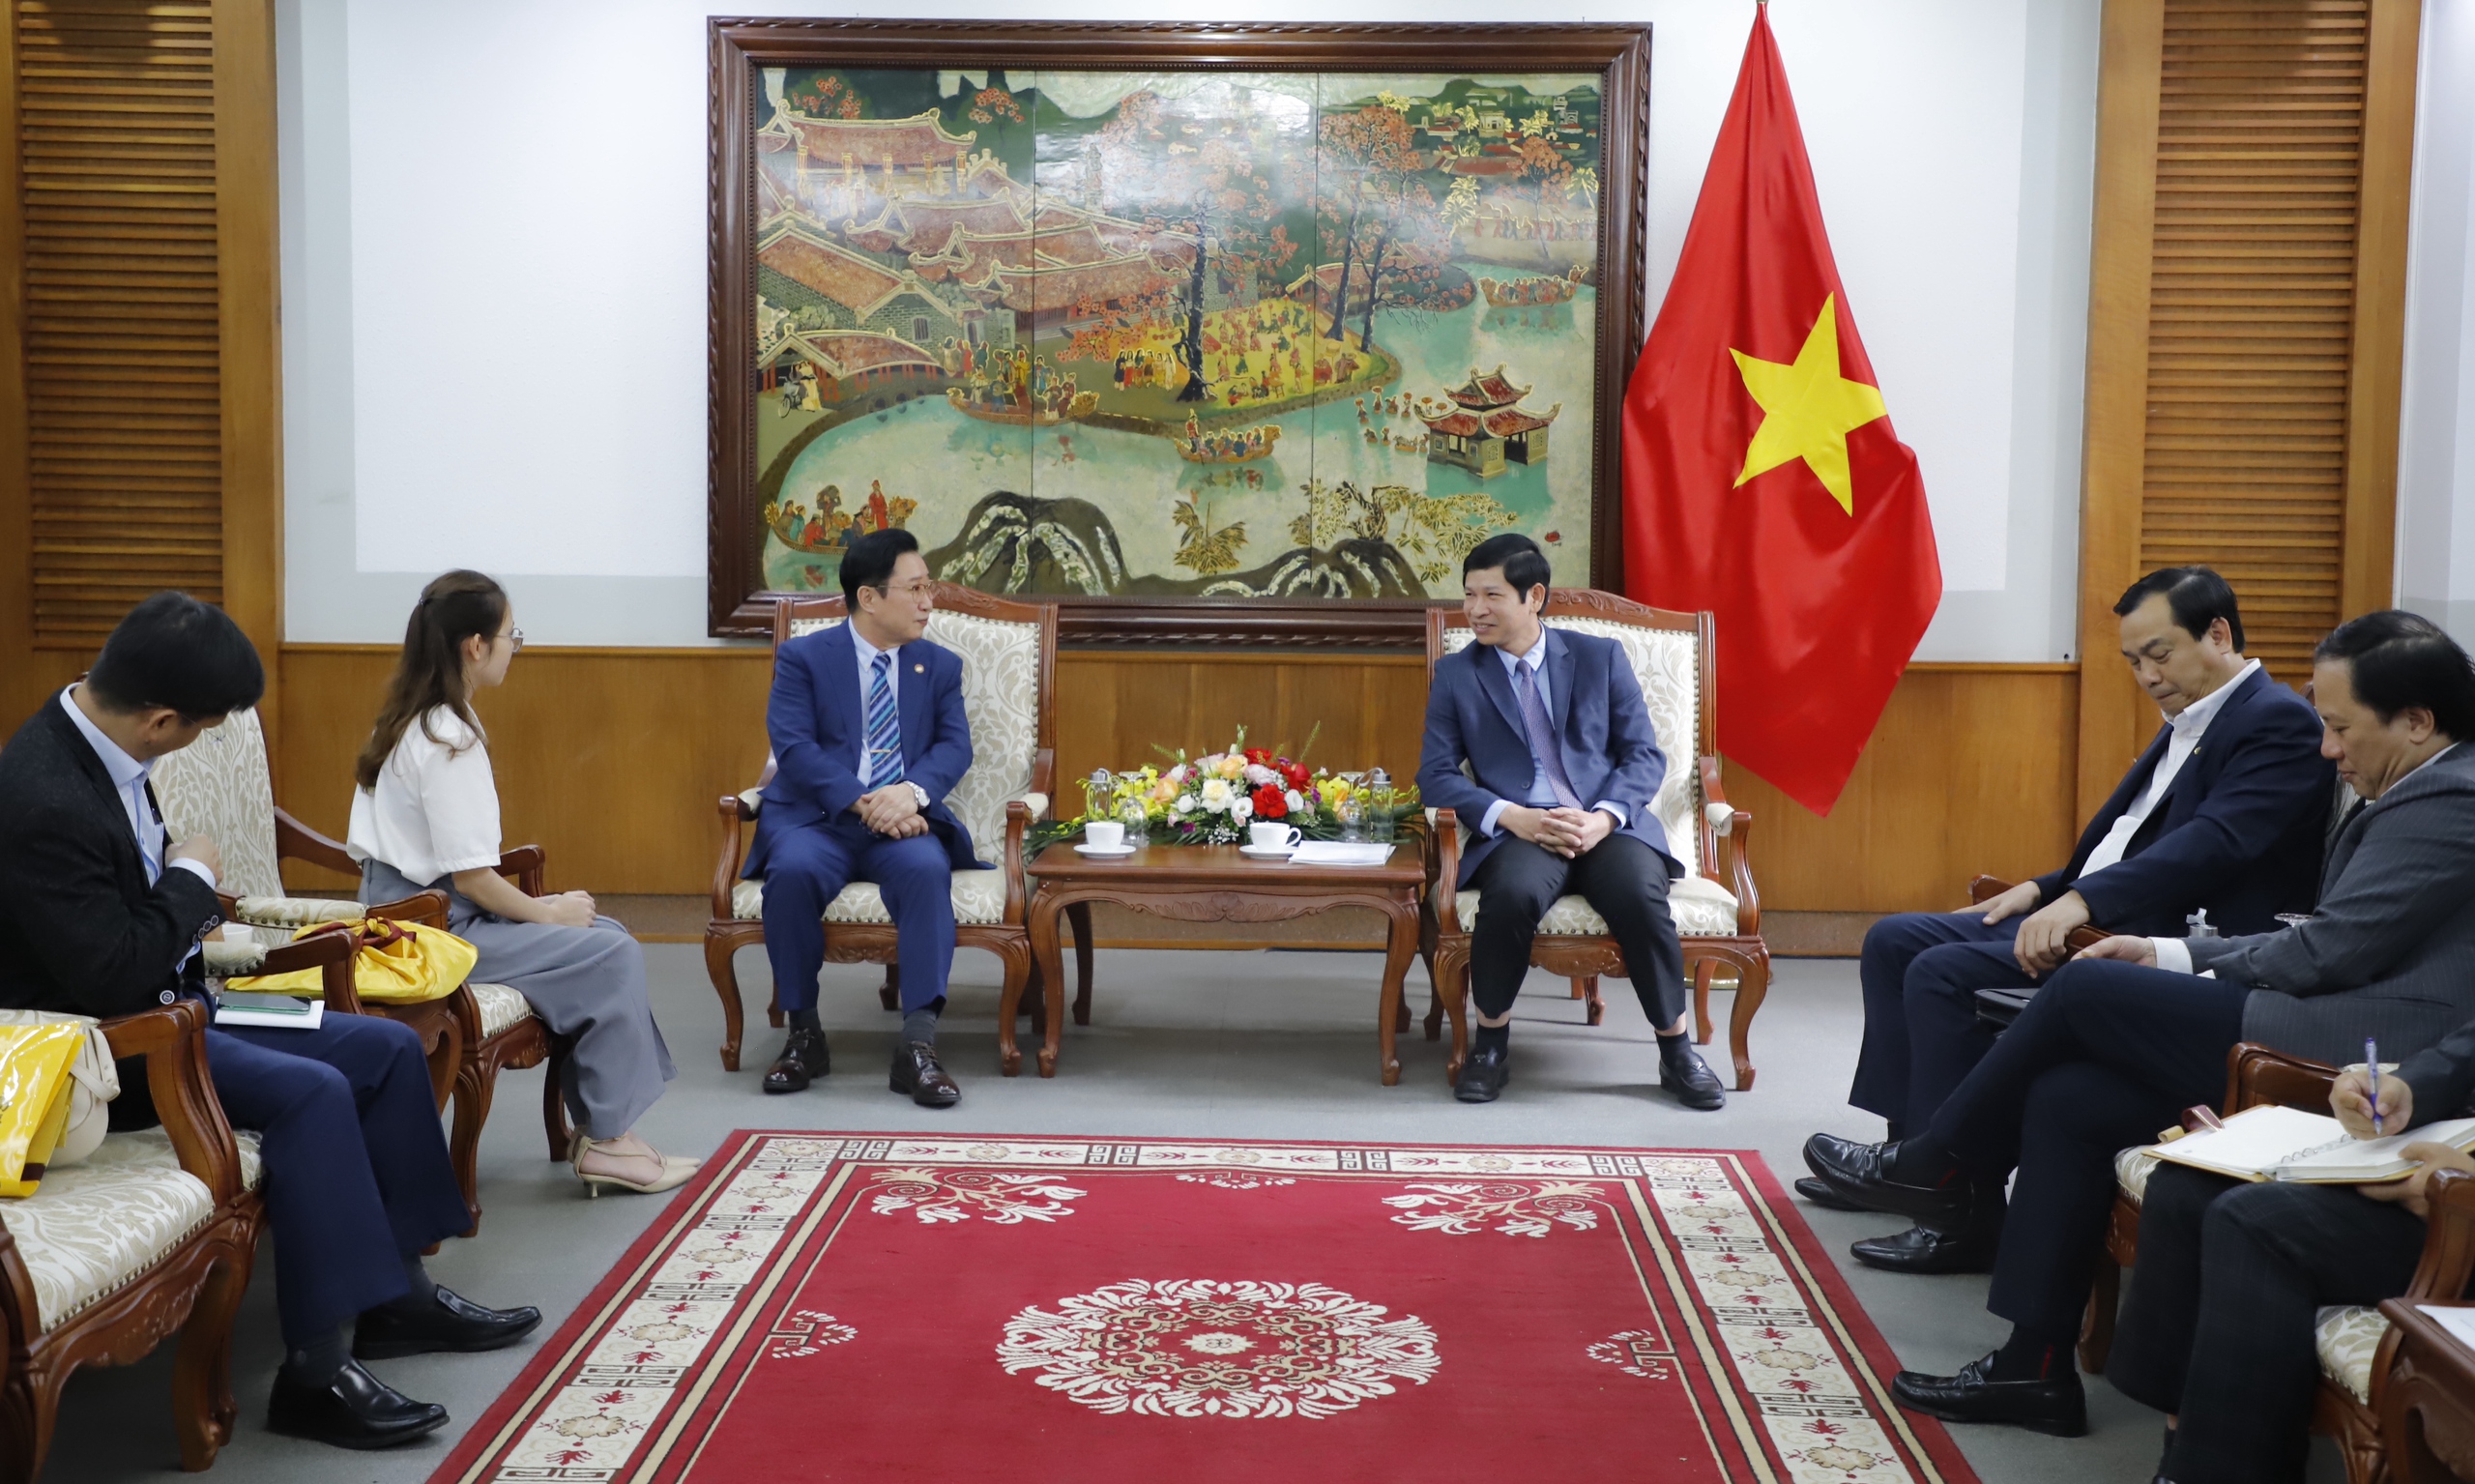 Thứ trưởng Hồ An Phong gặp mặt Đại sứ Du lịch Việt Nam tại Hàn Quốc Lý Xương Căn - Ảnh 1.